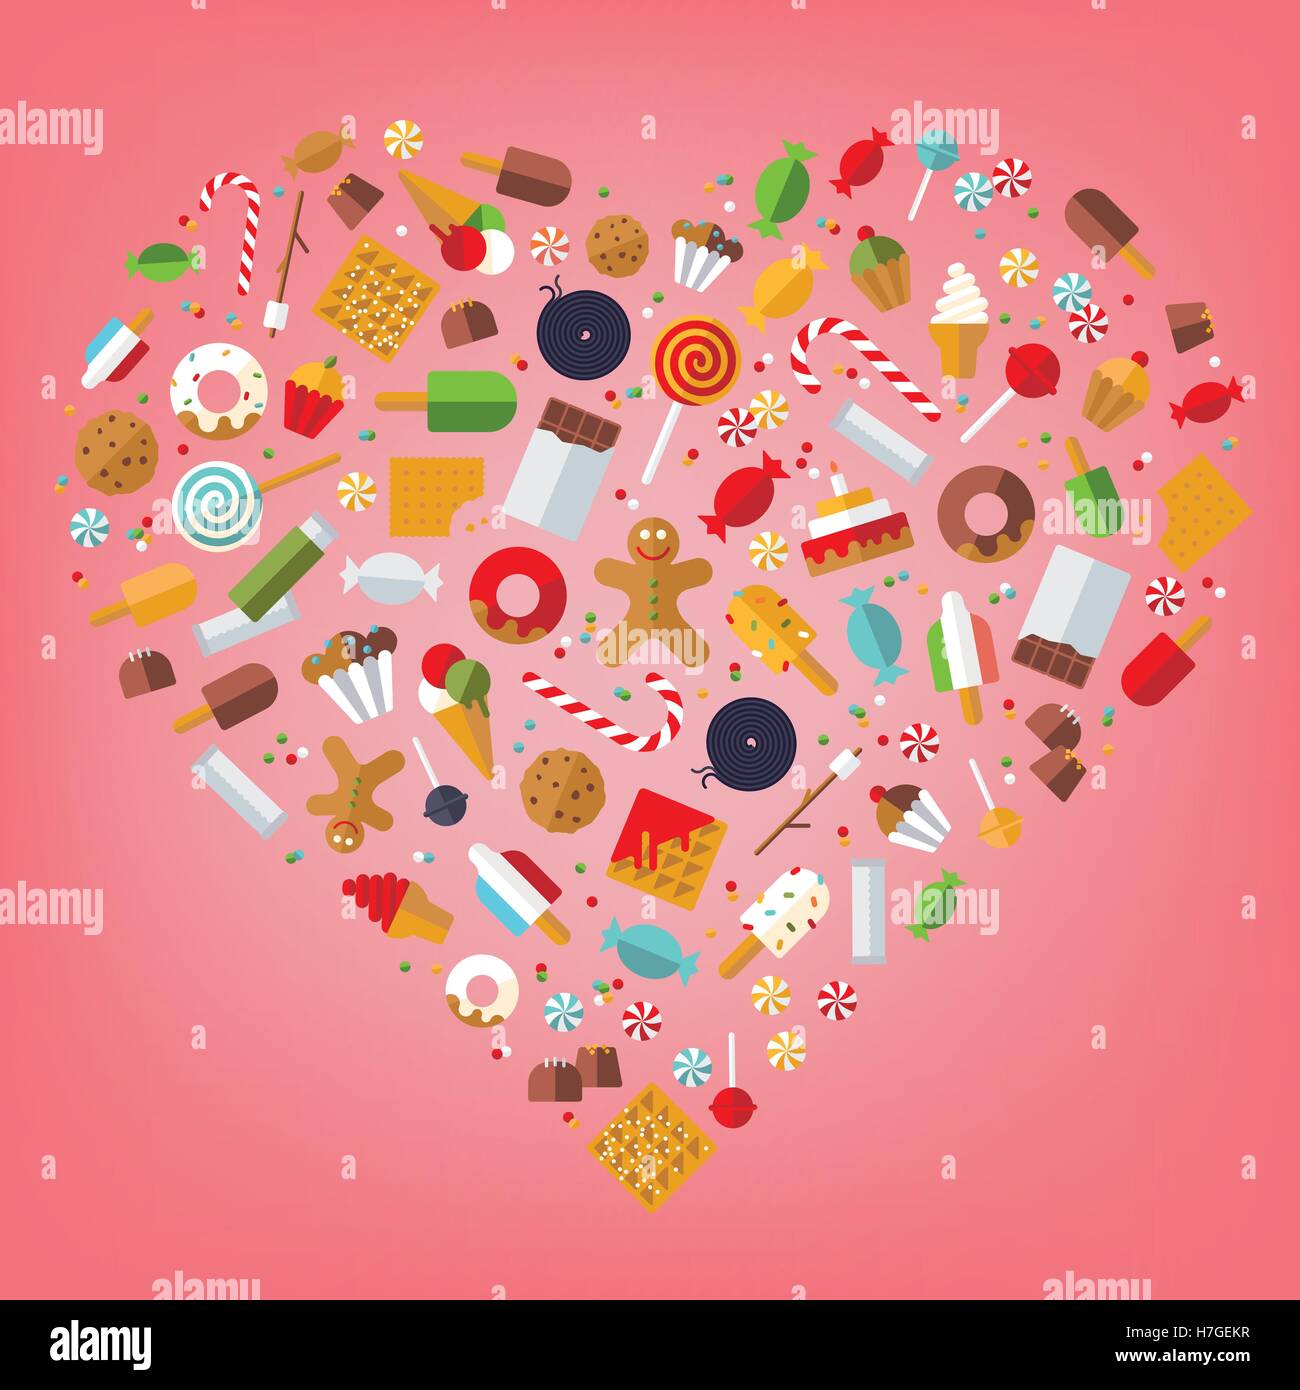 Caramelos, dulces, galletas, paletas, helados y pasteles iconos organizados en forma de corazón sobre fondo de color rosa, diseño plano Ilustración del Vector